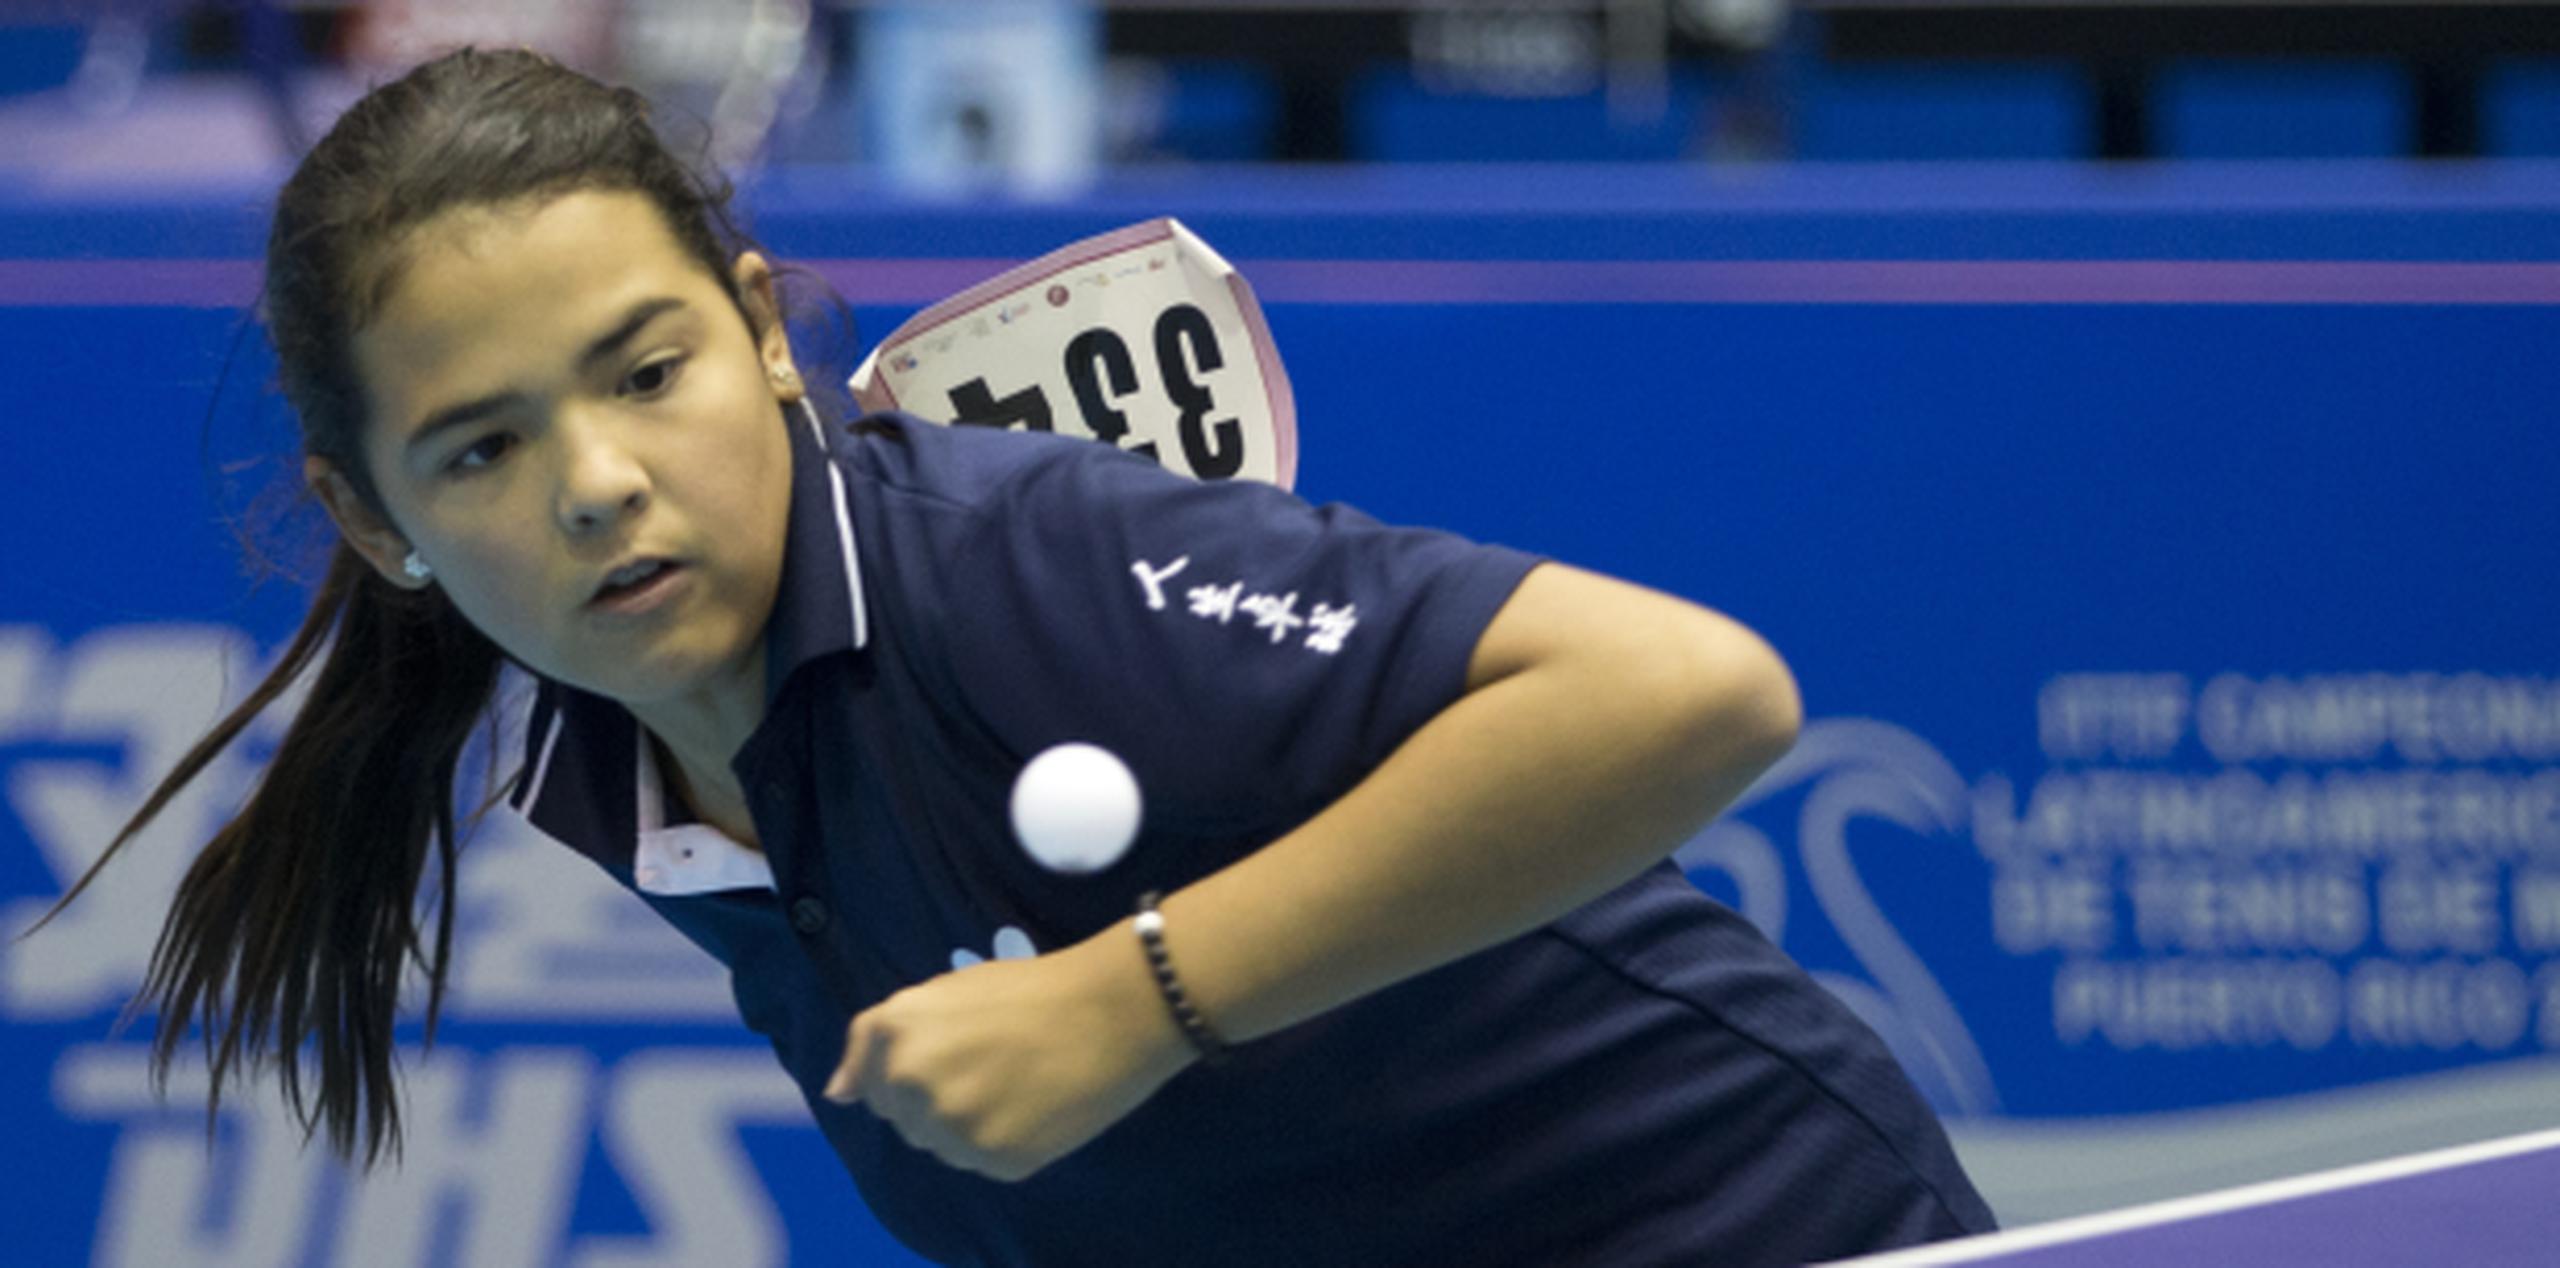 La jugadora de tenis de mesa Adriana Díaz, de 15 años de edad, será la mujer más joven en la historia en participar en una olimpiada. (Archivo)